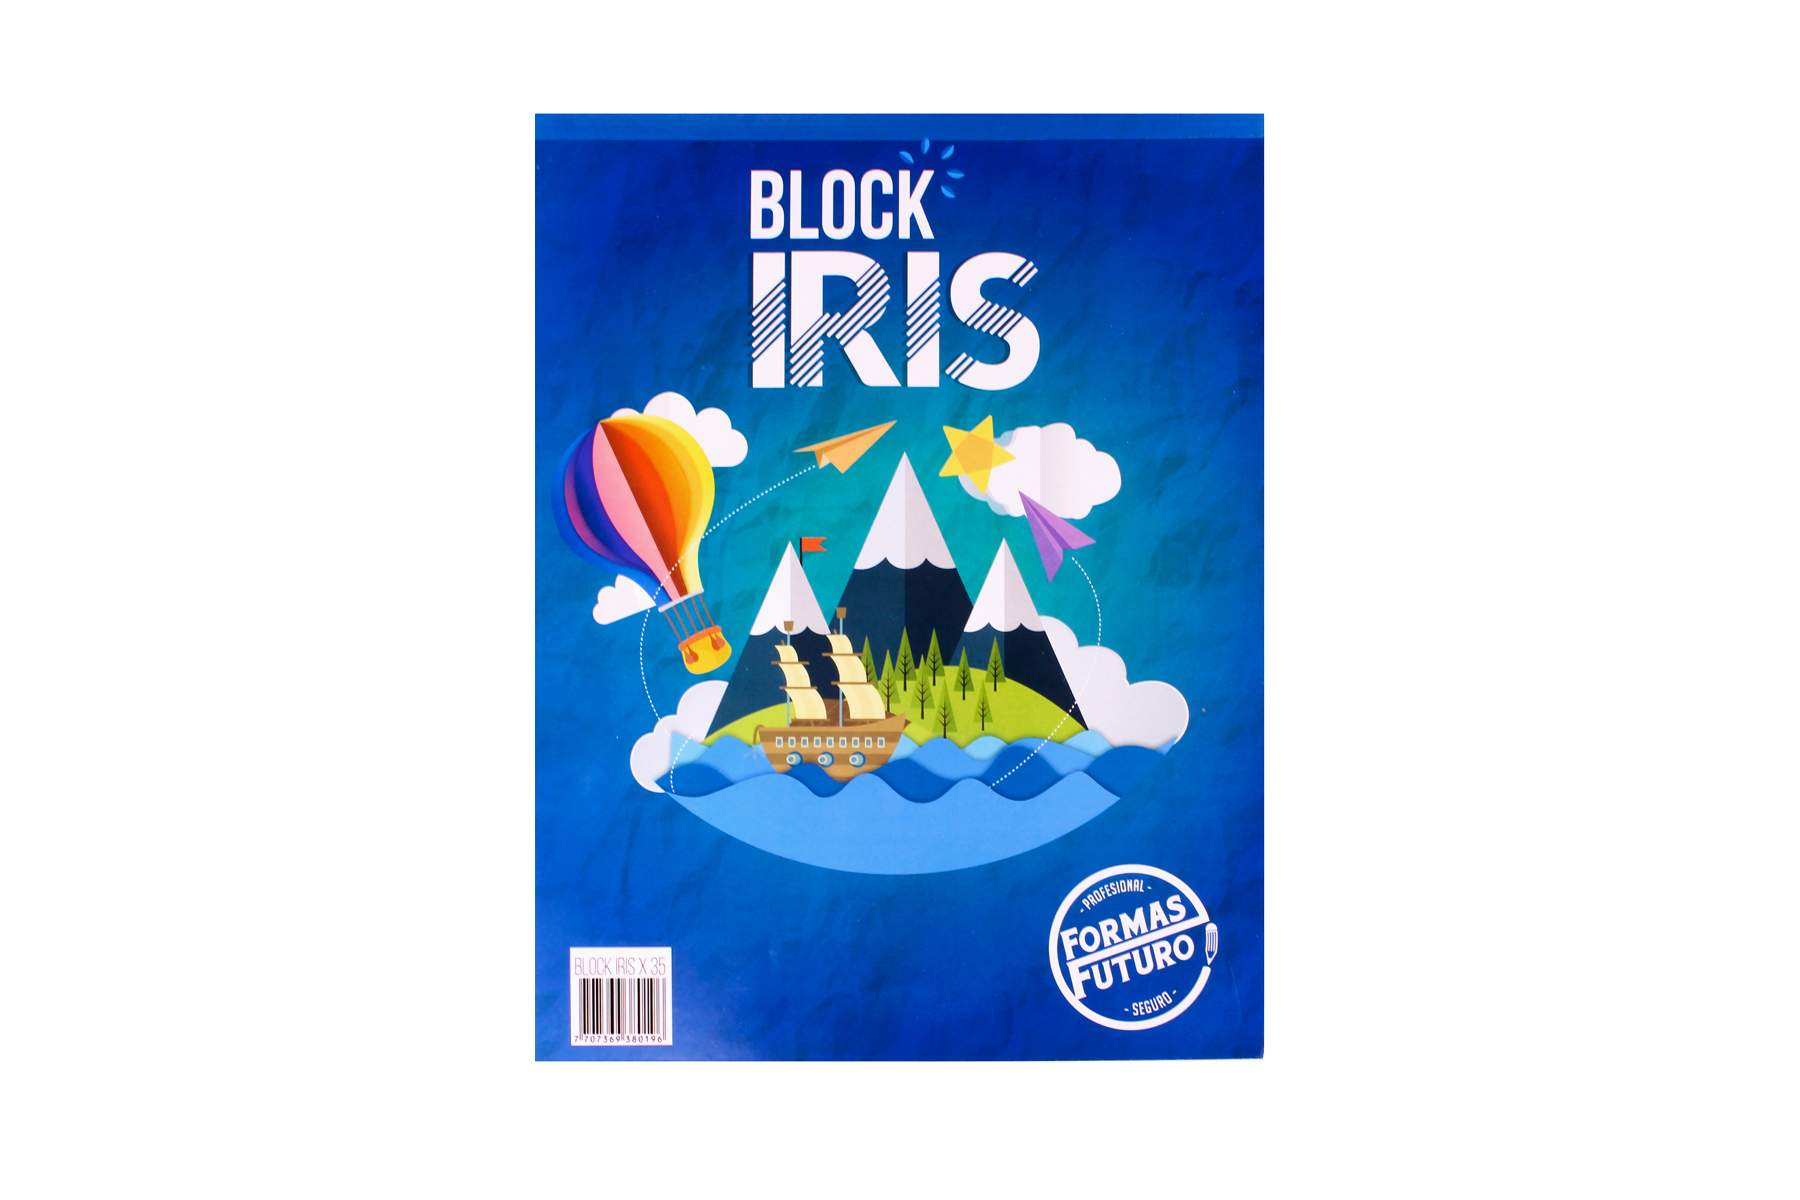 Block iris colores primarios distribuidores de papelería al por mayor